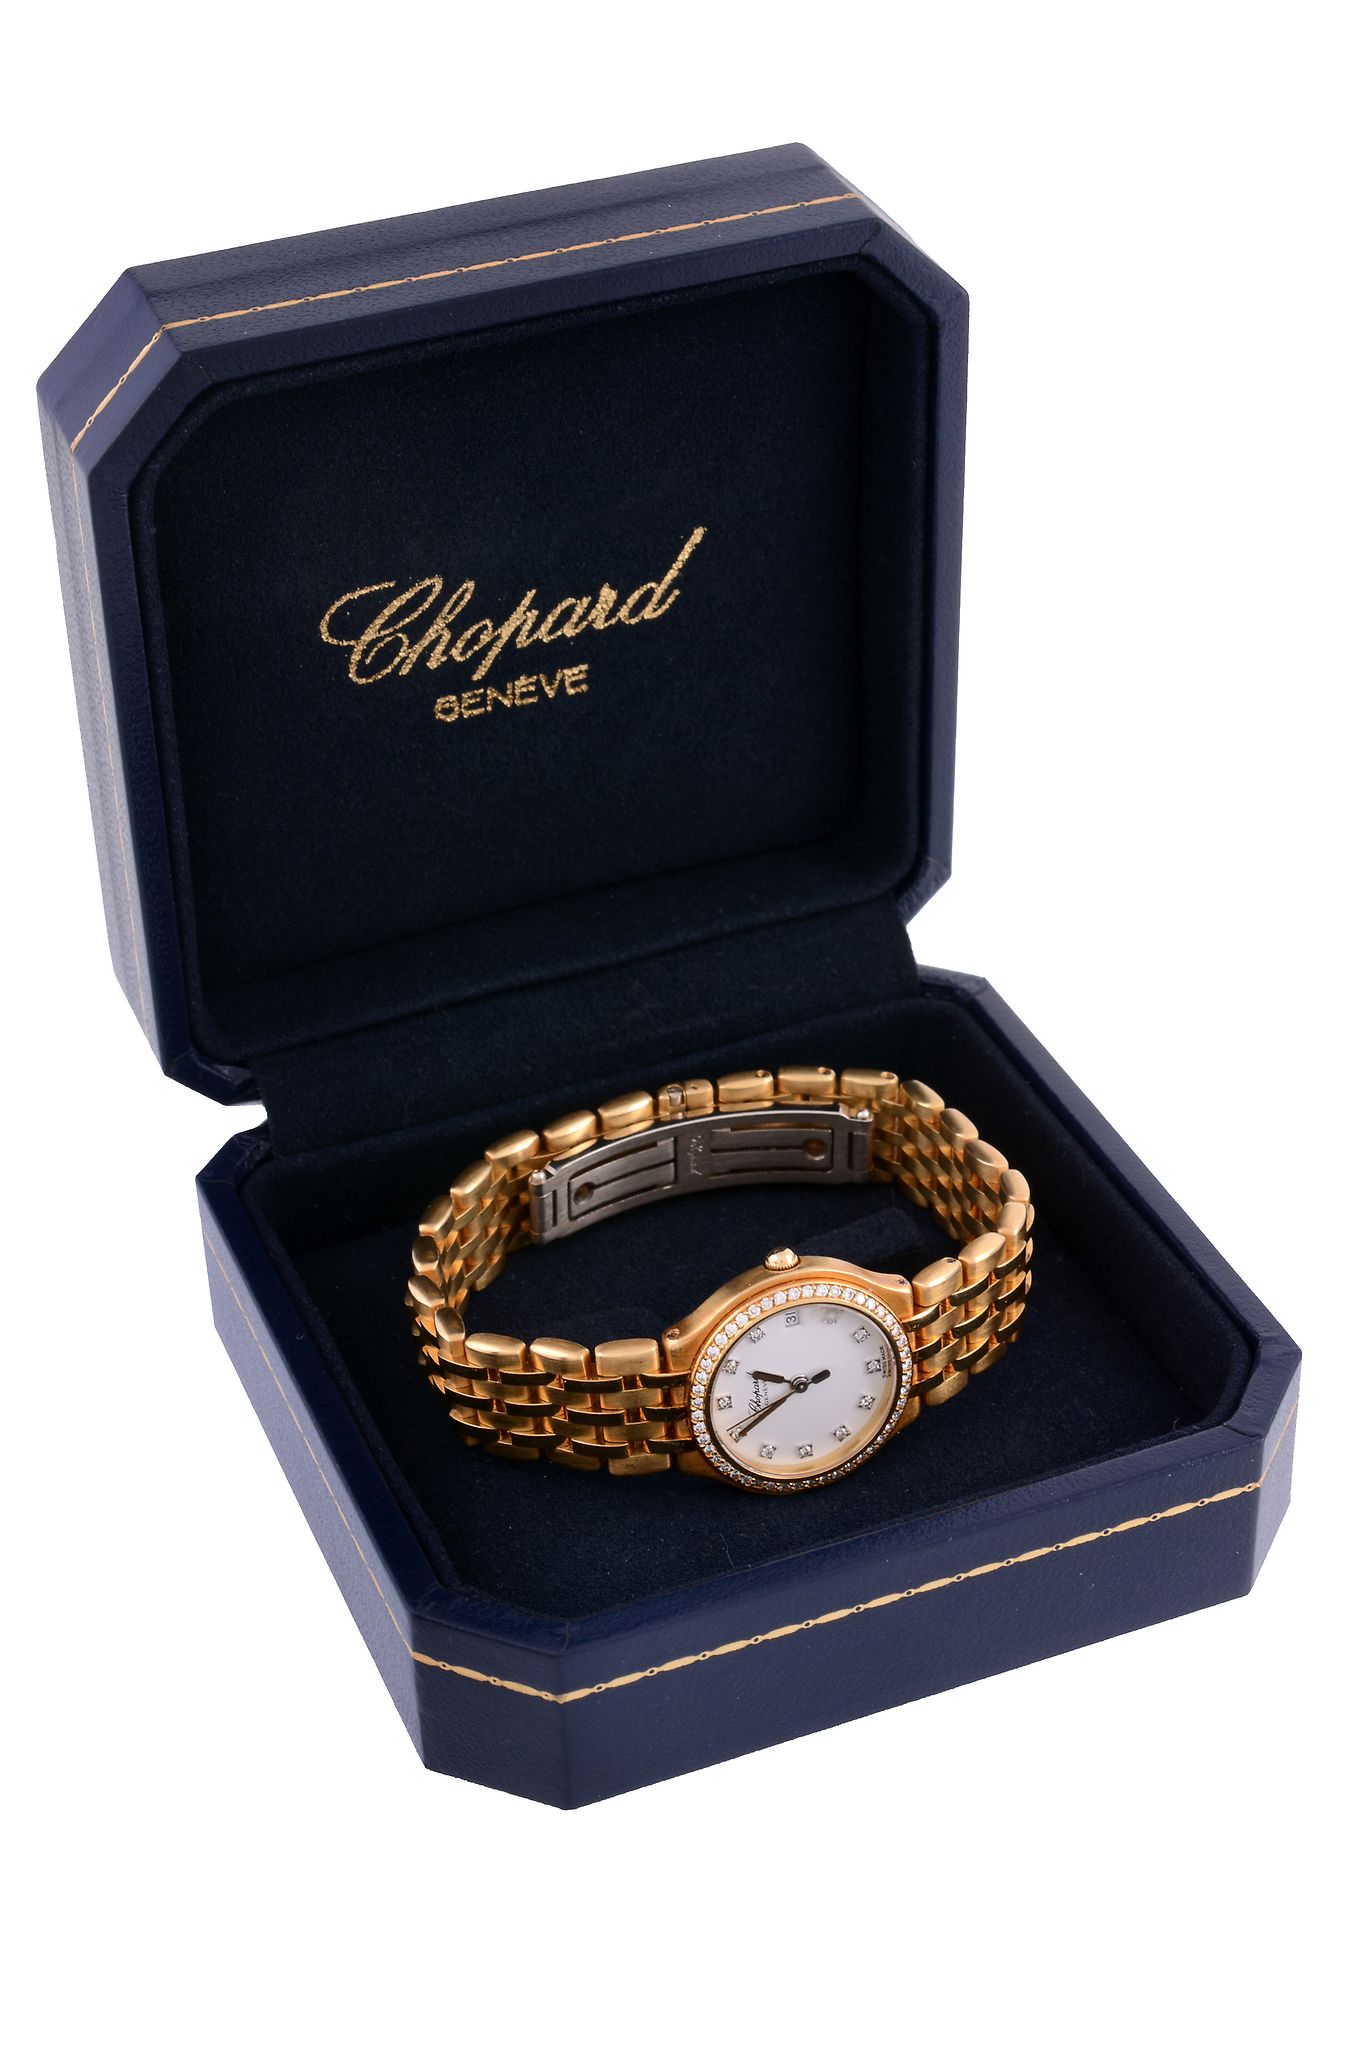 Chopard, Monte-Carlo, ref. 5232, a lady's 18 carat gold and diamond quartz centre seconds bracelet